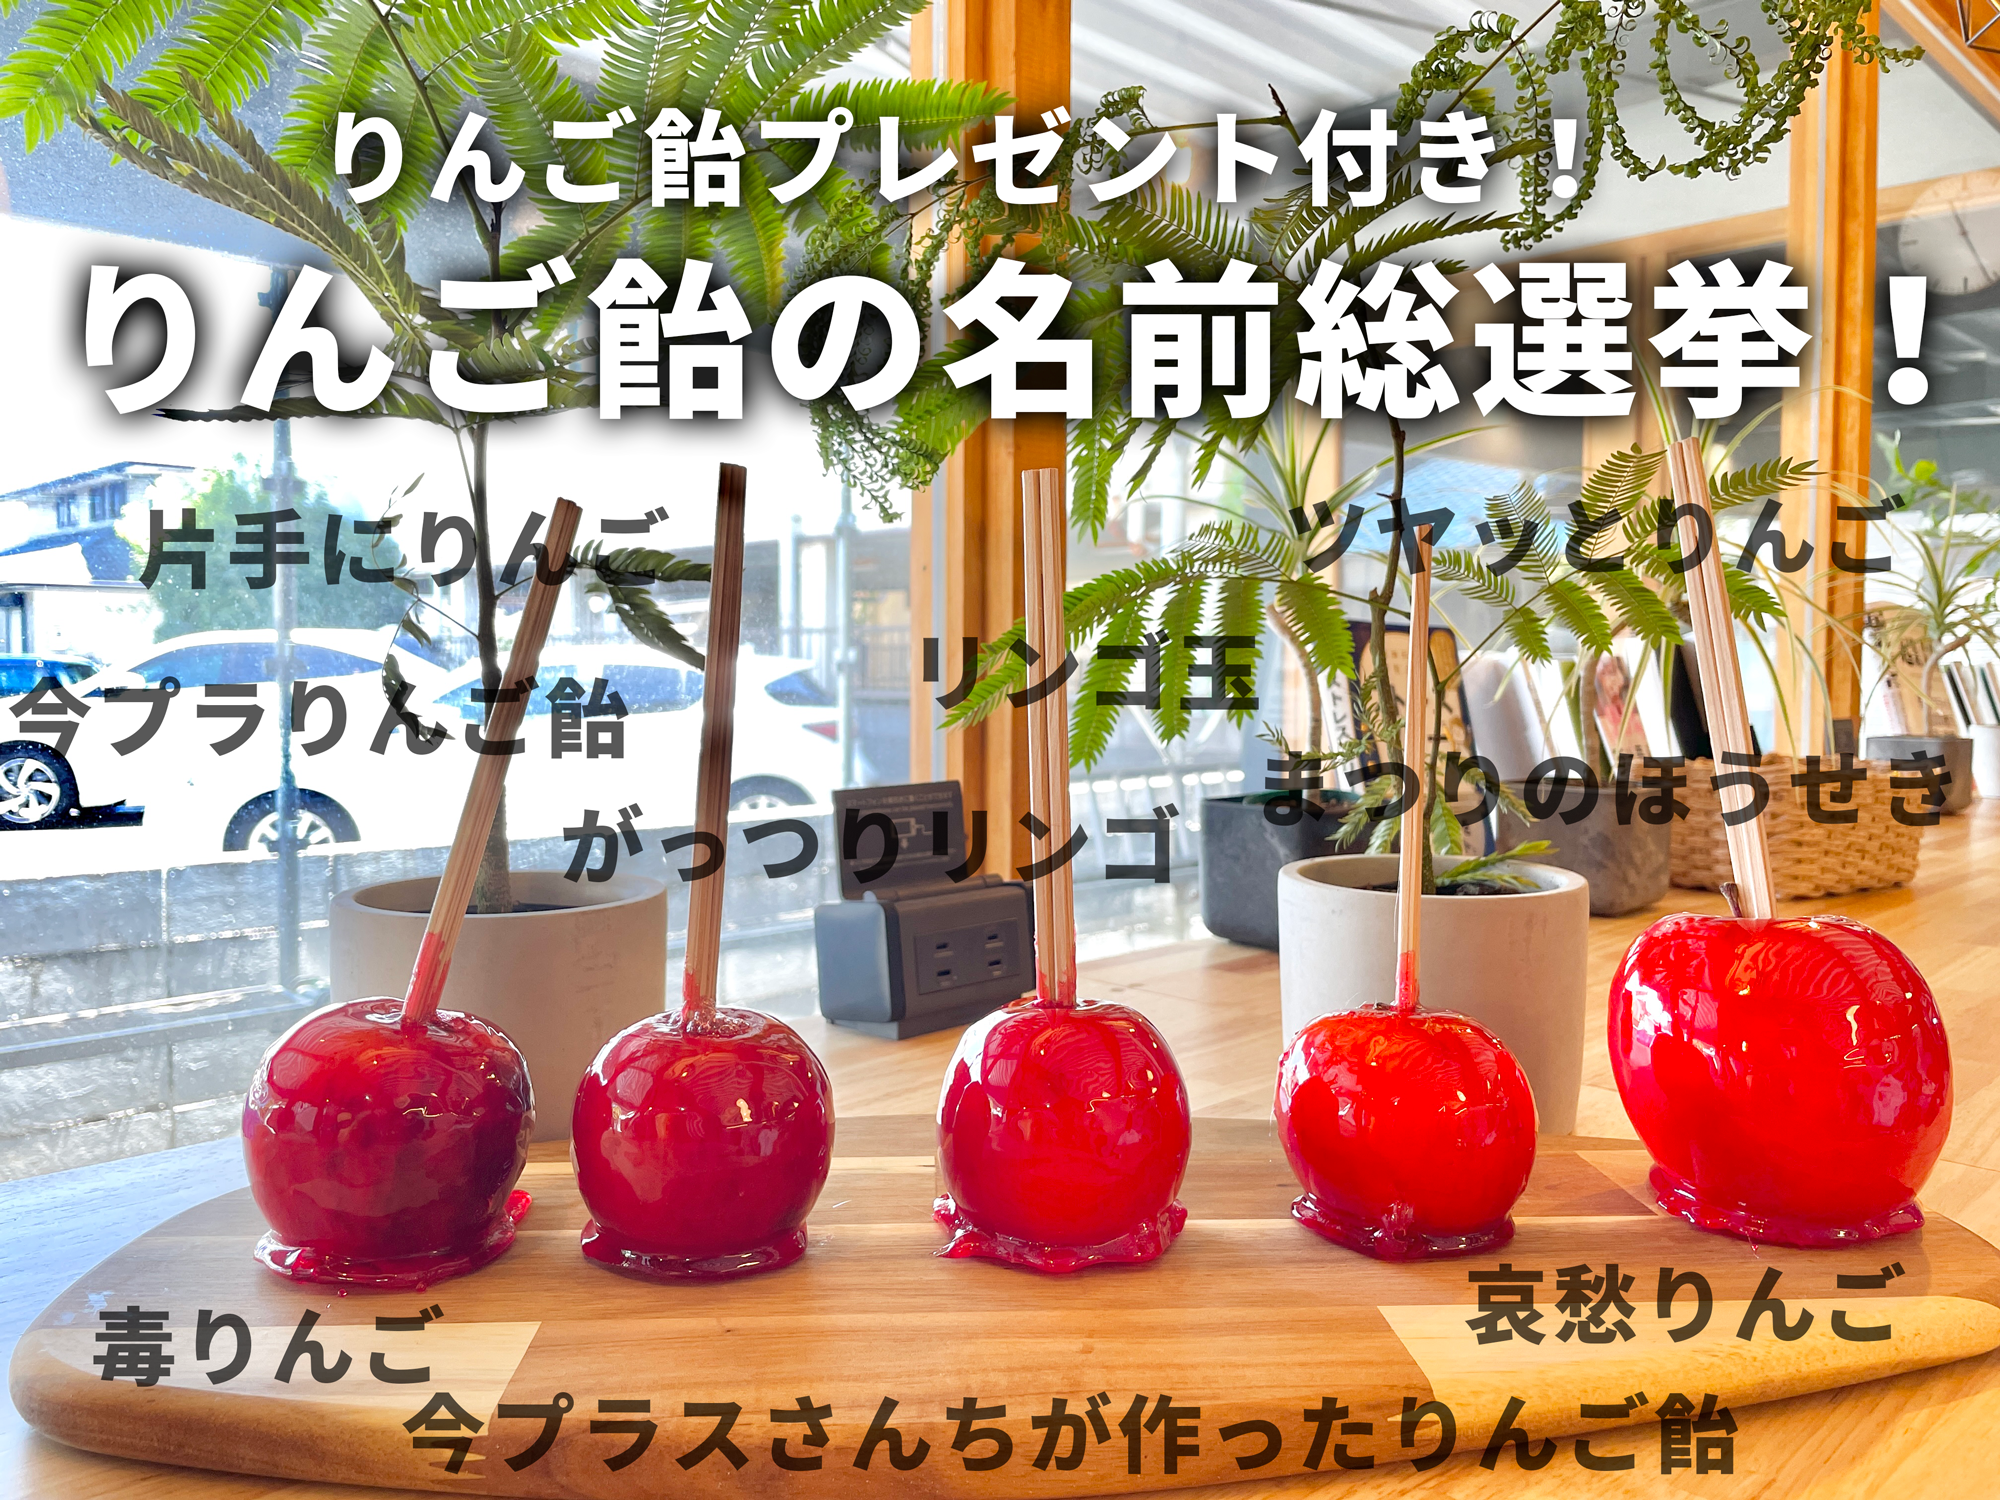 お祭りで出すりんご飴の名前総選挙開催！！｜今プラス 滋賀県のコ